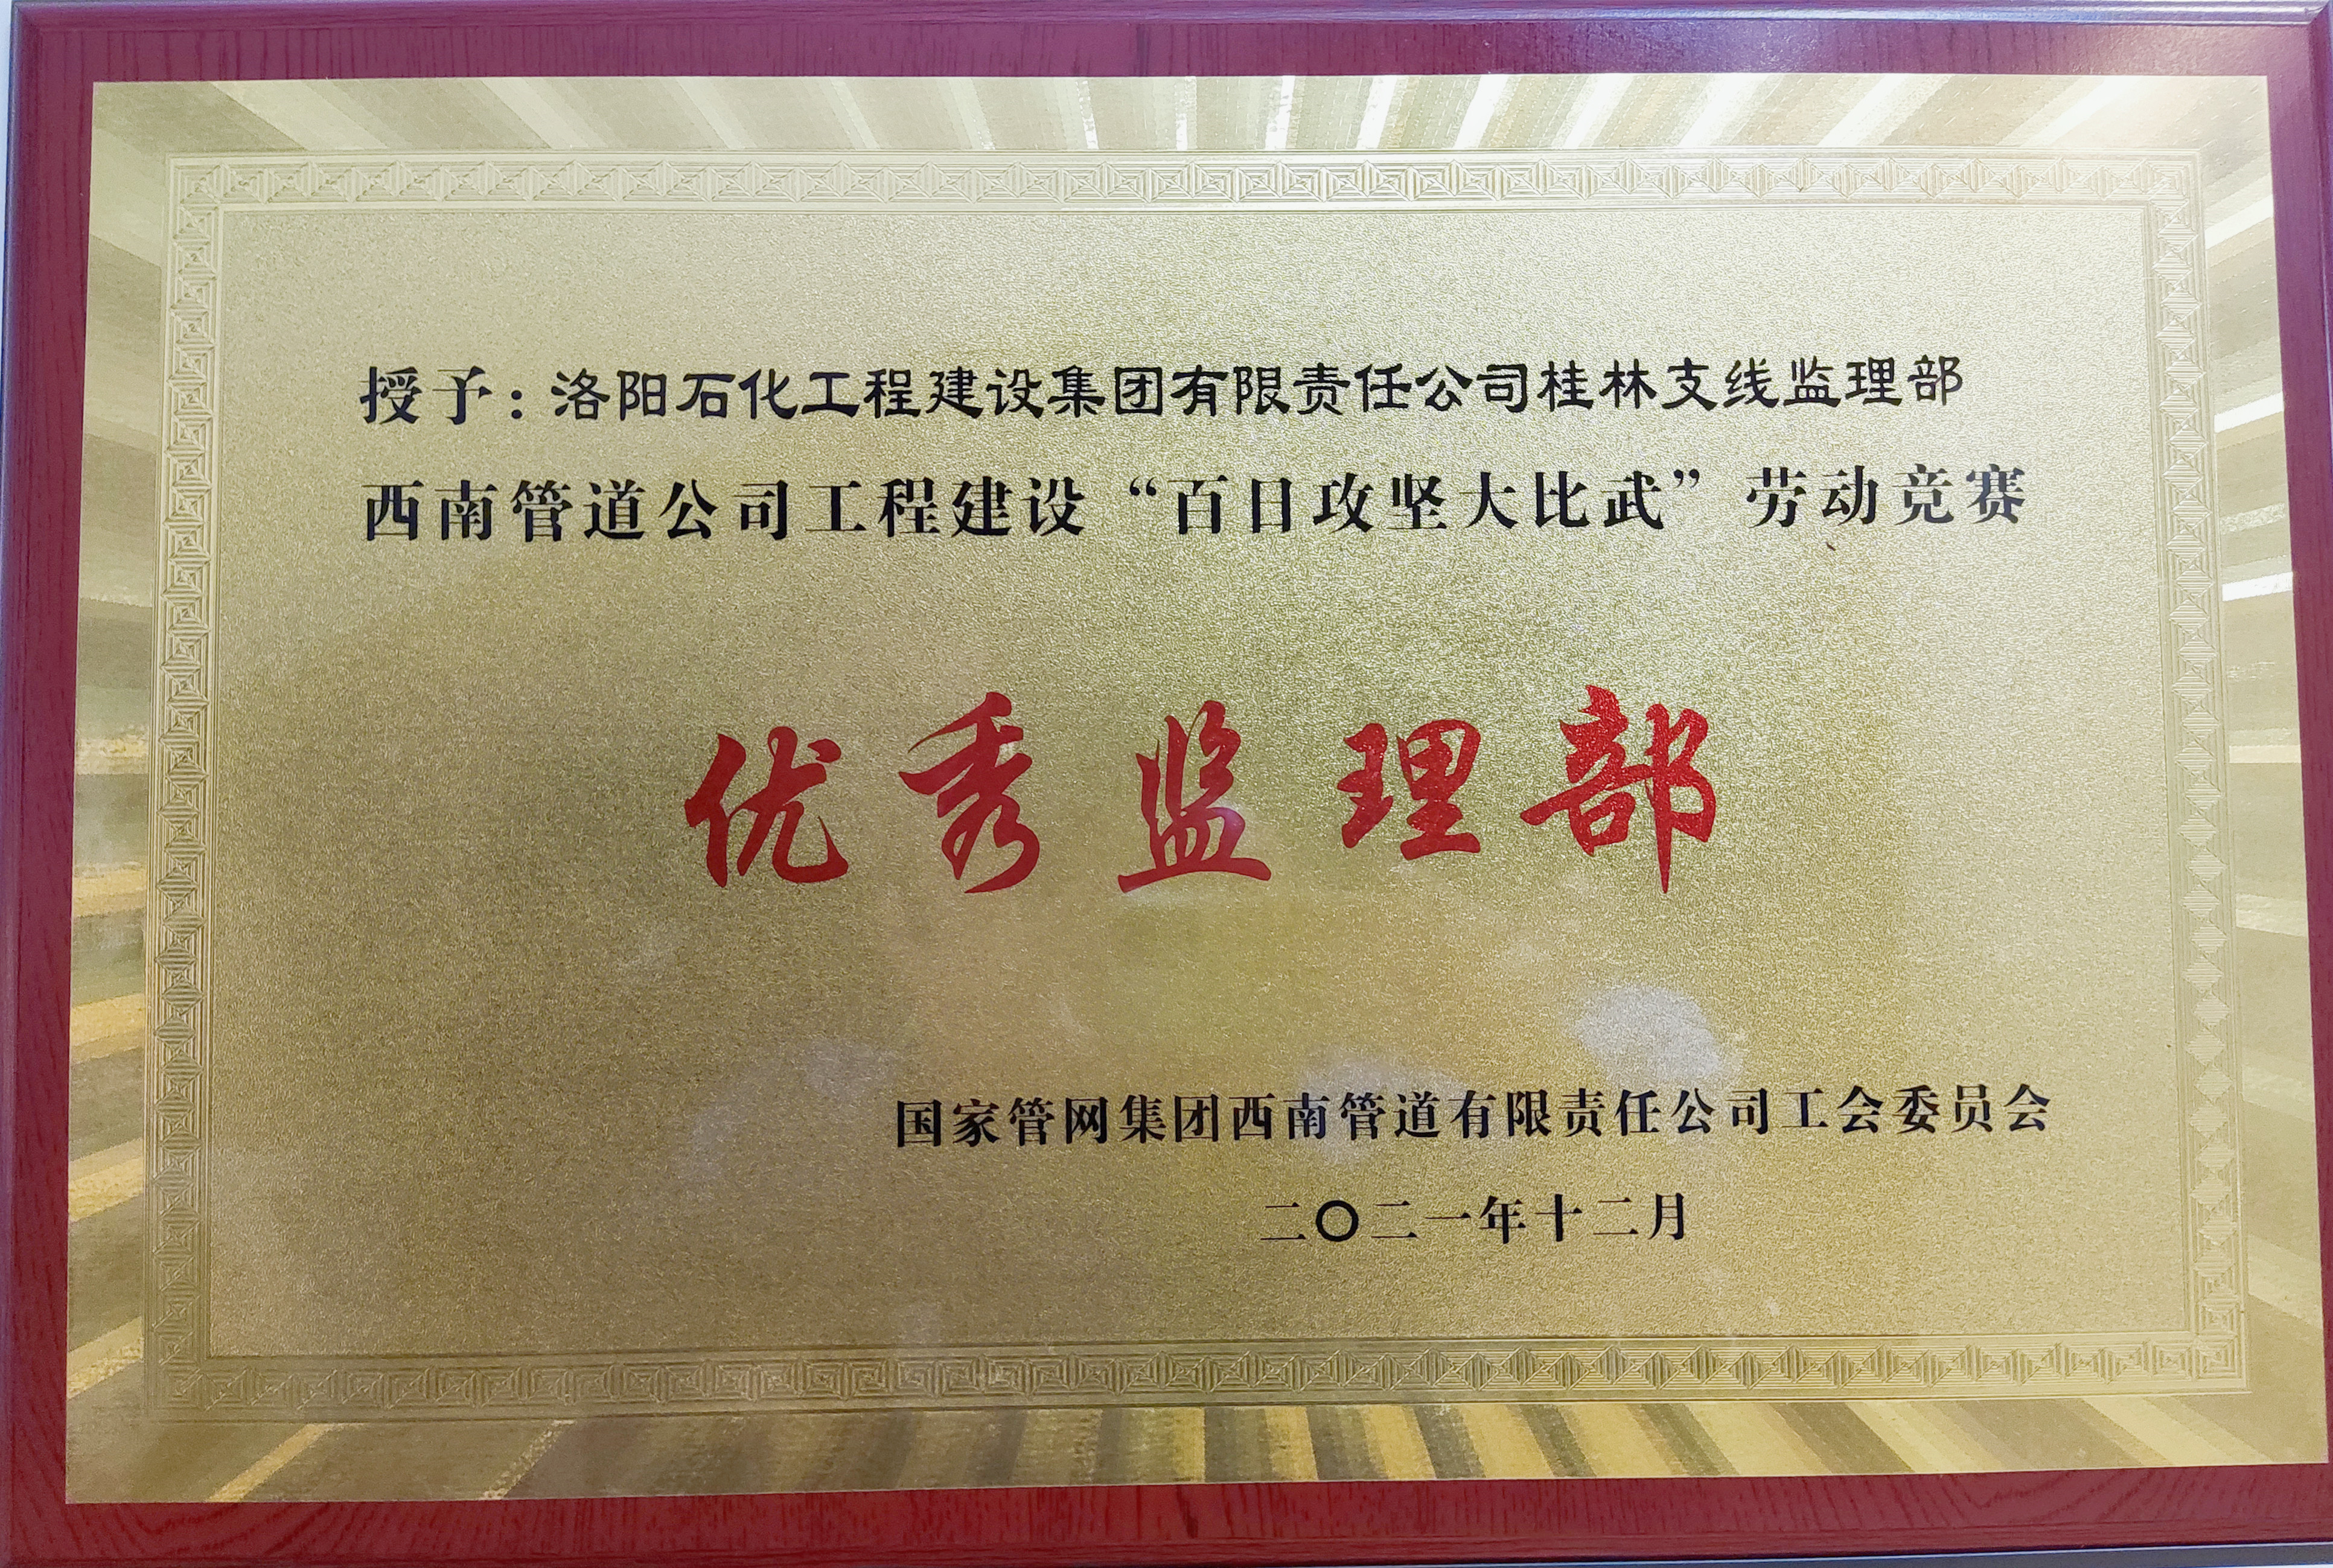 廣西LNG桂林支線項目監理部獲“百日攻堅大比武”勞動競賽優勝監理部 